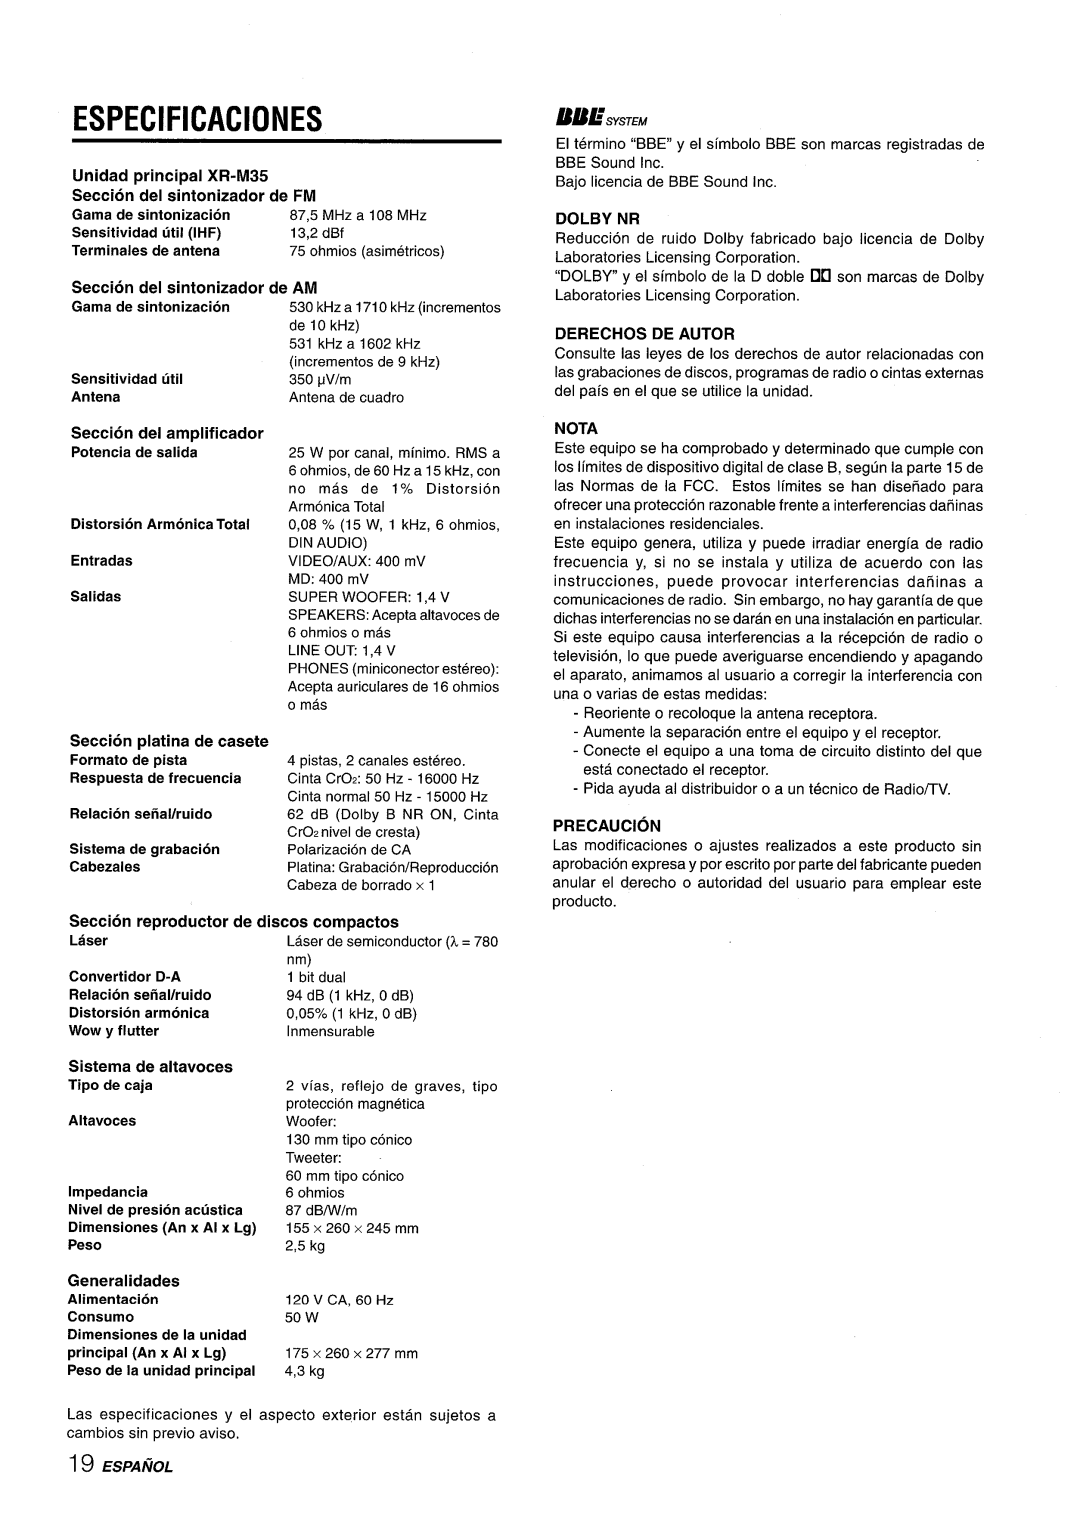 Aiwa Especificaciones, Unidad principal XR-M35, Seccion del sintonizador de FM, Gama de sintonizacion, Formato de pista 